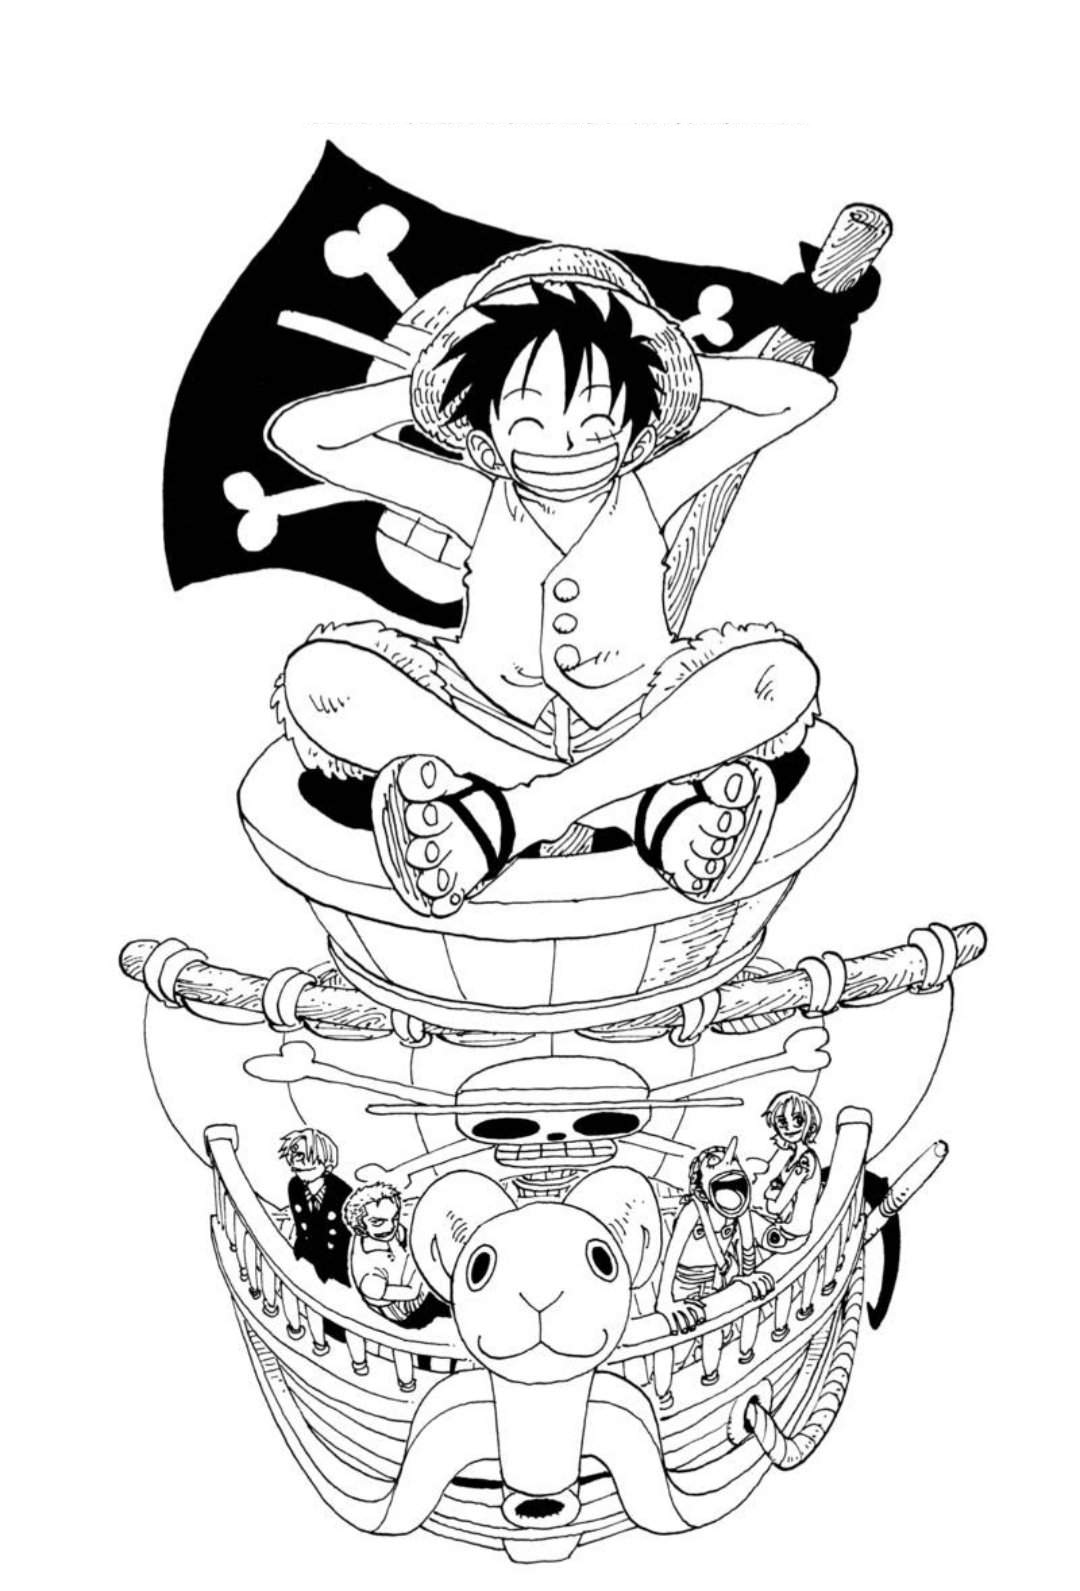 Tổng hợp các bức tranh tô màu One Piece cho bé